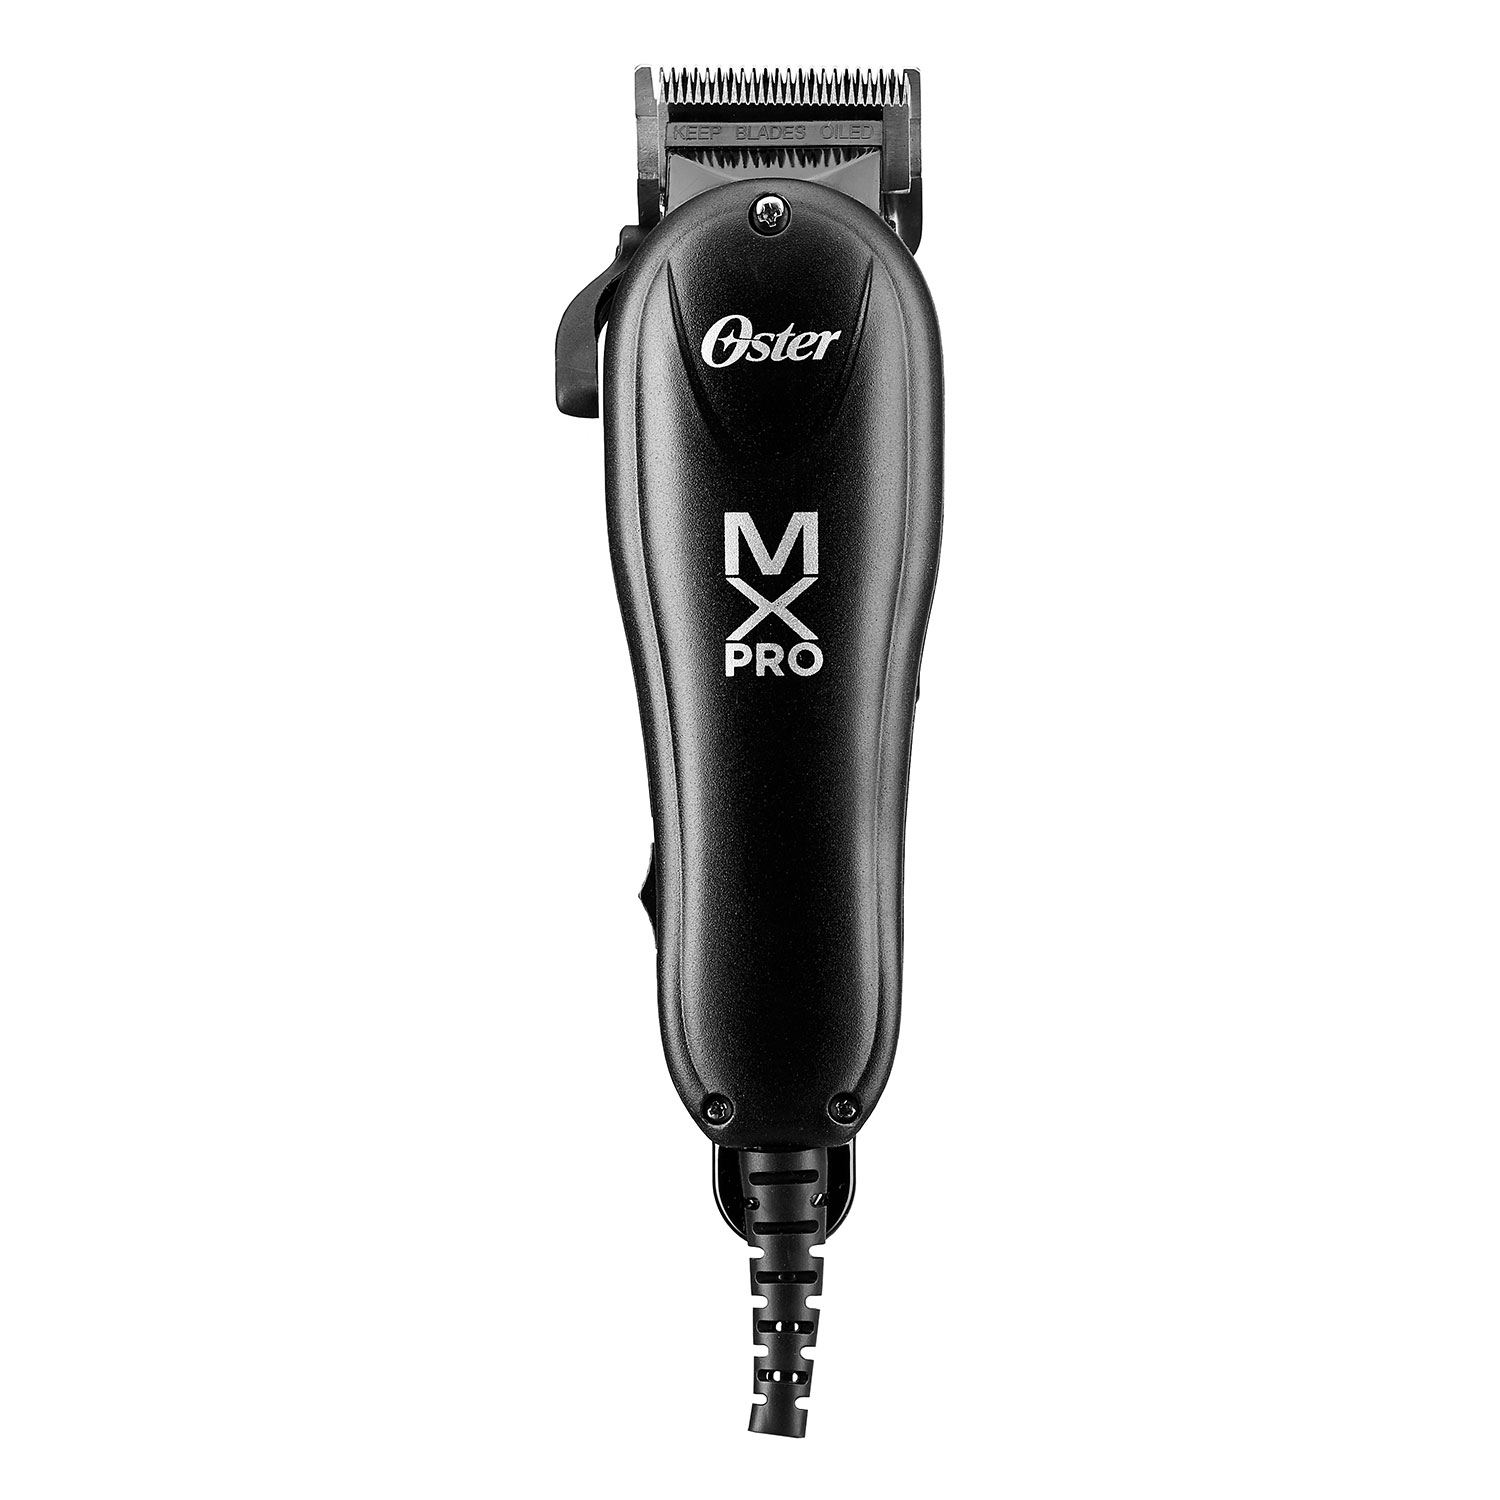 Produktbild von Oster - Haarschneide-Maschine mXpro